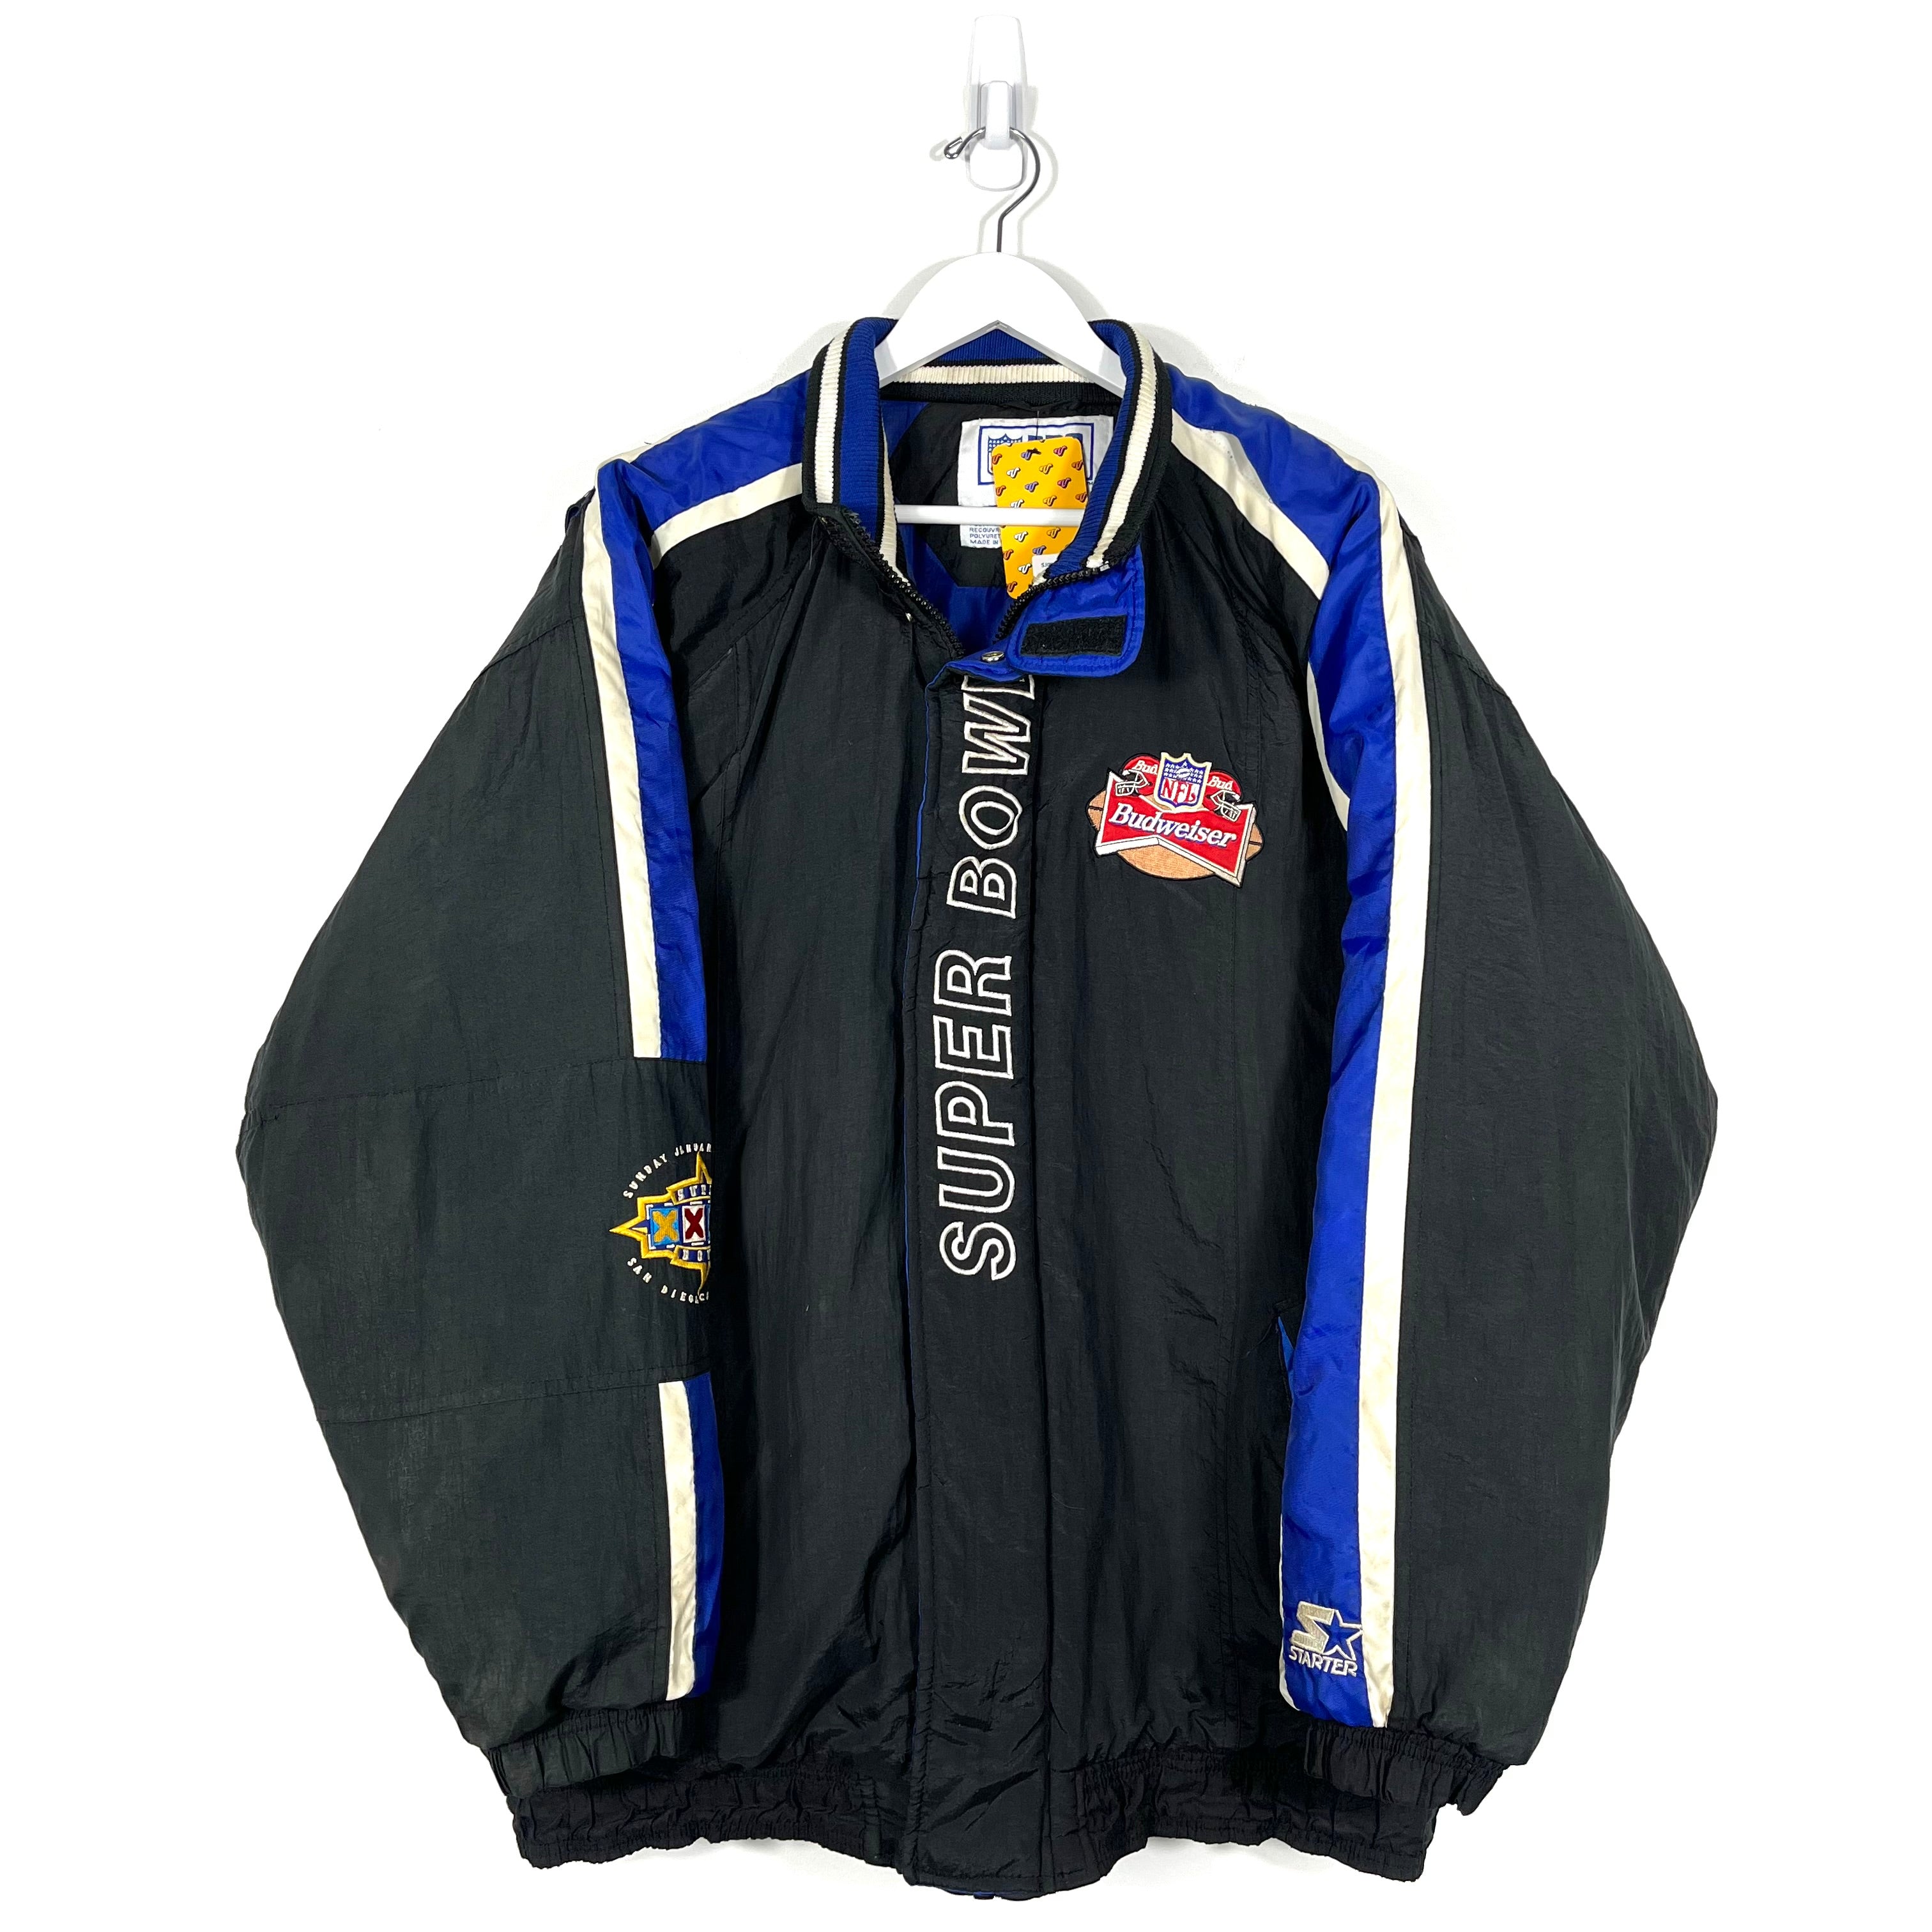 Vintage 1998 Starter NFL Superbowl Jacket - Men's Large